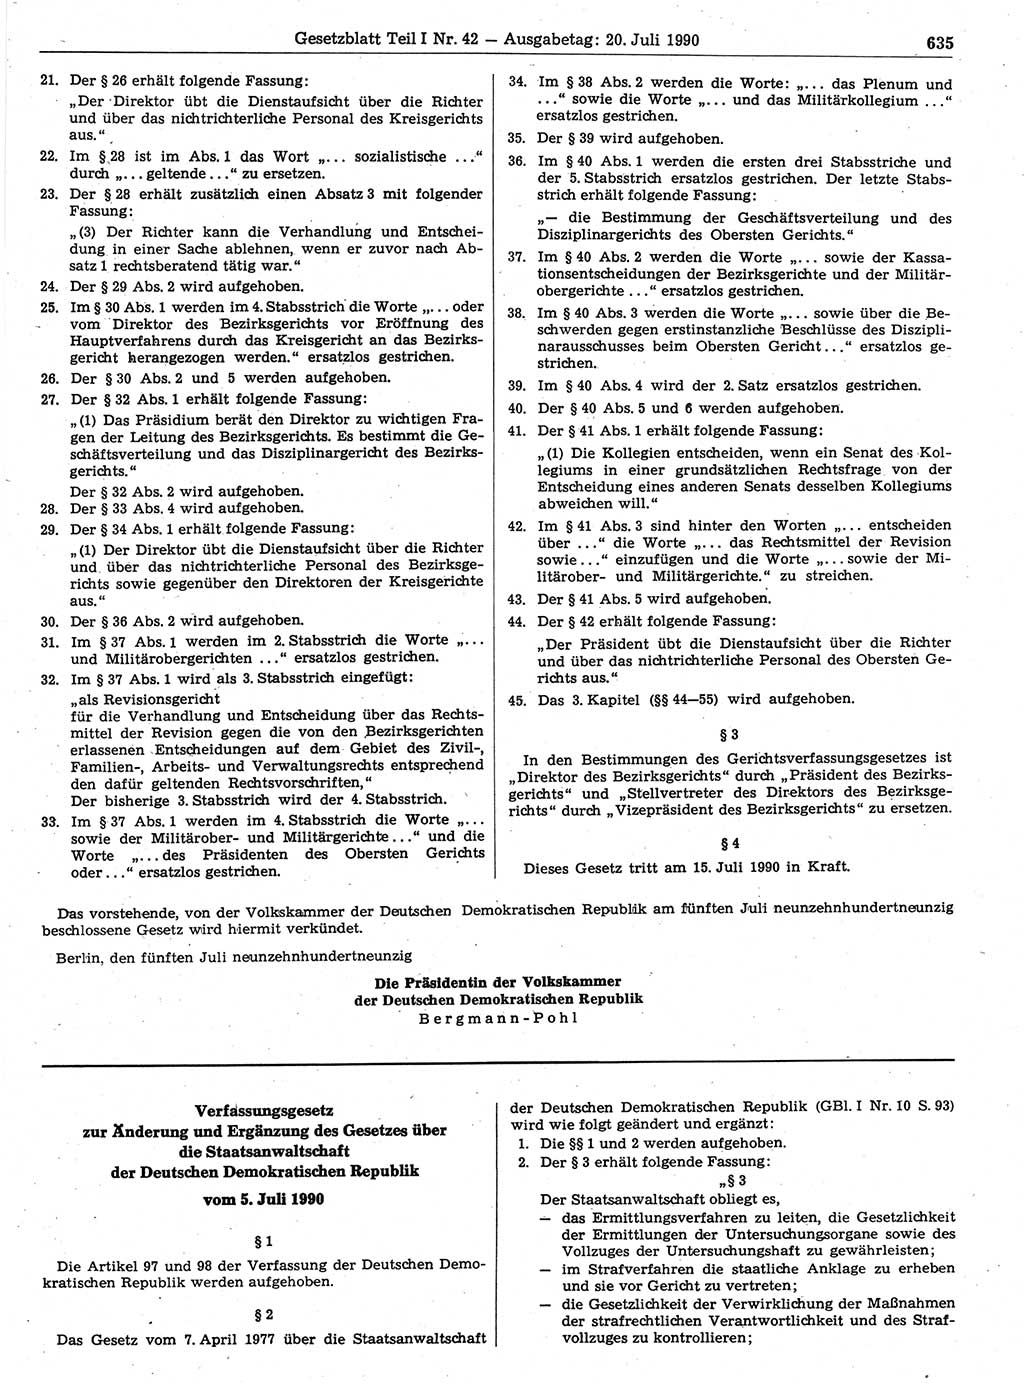 Gesetzblatt (GBl.) der Deutschen Demokratischen Republik (DDR) Teil Ⅰ 1990, Seite 635 (GBl. DDR Ⅰ 1990, S. 635)